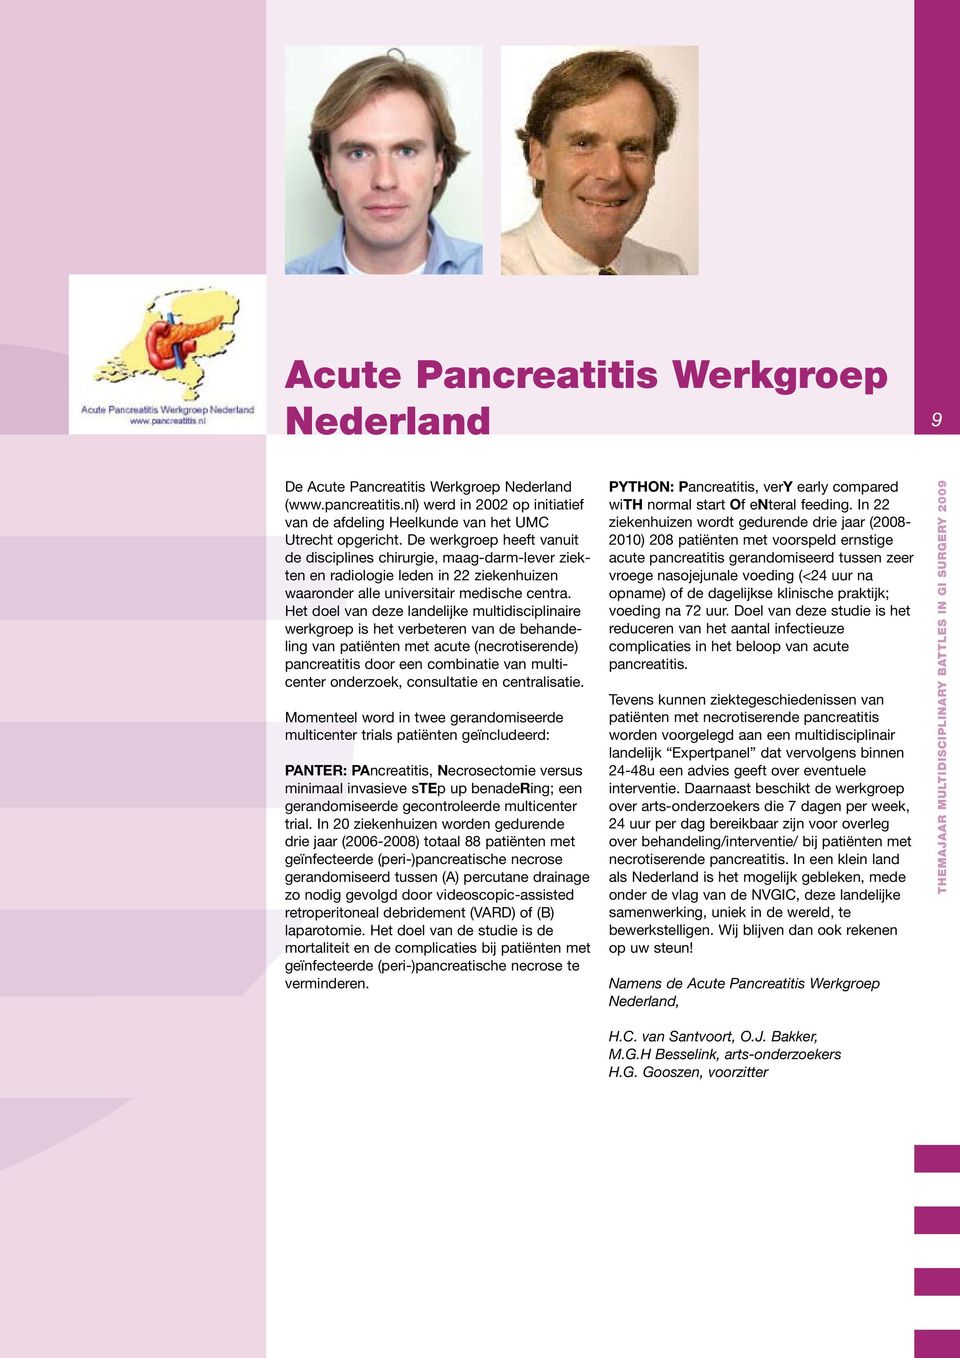 Het doel van deze landelijke multidisciplinaire werkgroep is het verbeteren van de behandeling van patiënten met acute (necrotiserende) pancreatitis door een combinatie van multicenter onderzoek,